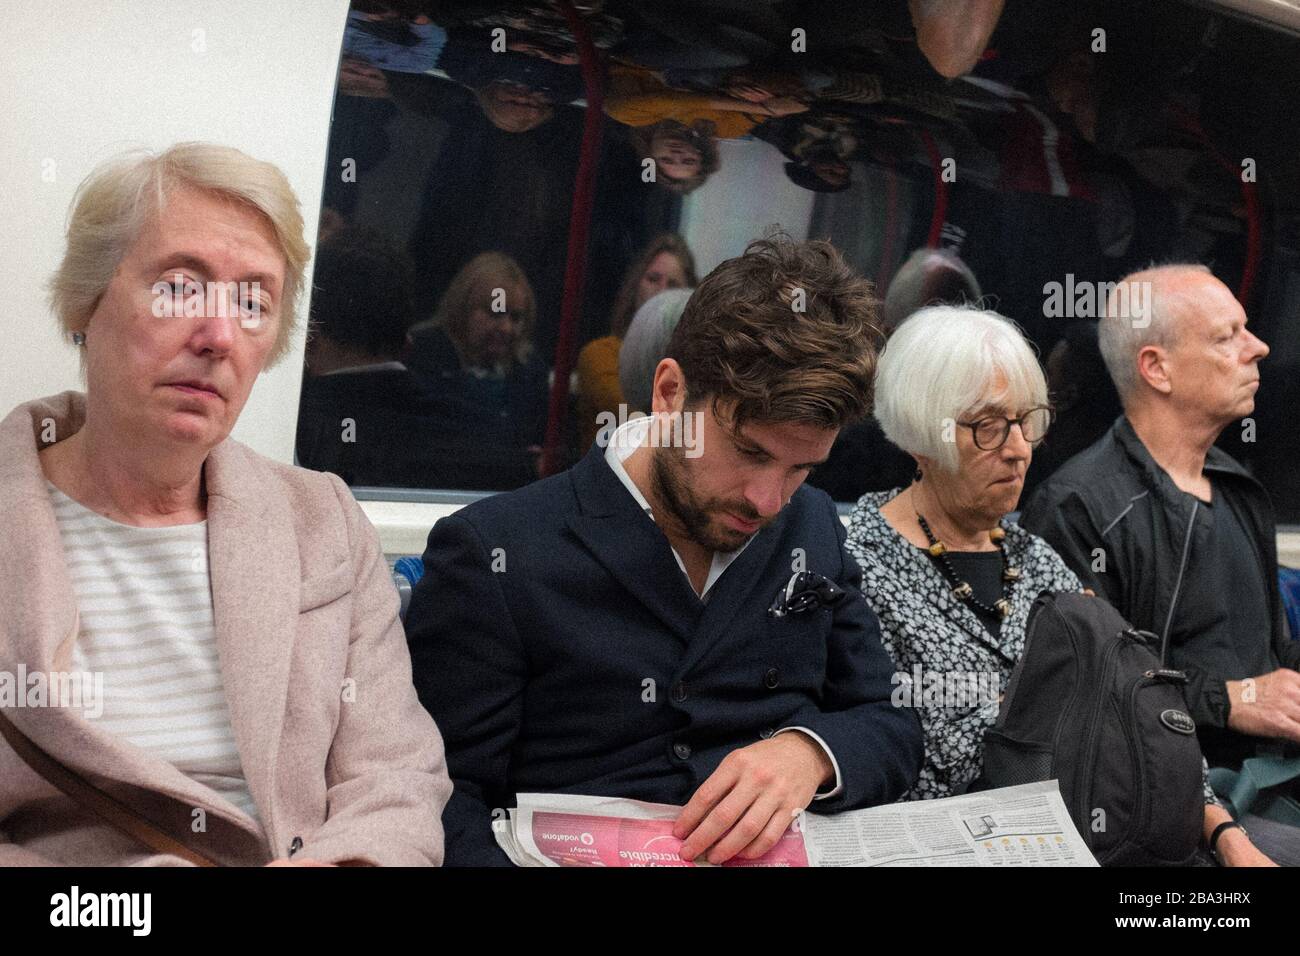 Persone sedute sulla metropolitana di Londra, Londra, Regno Unito Foto Stock